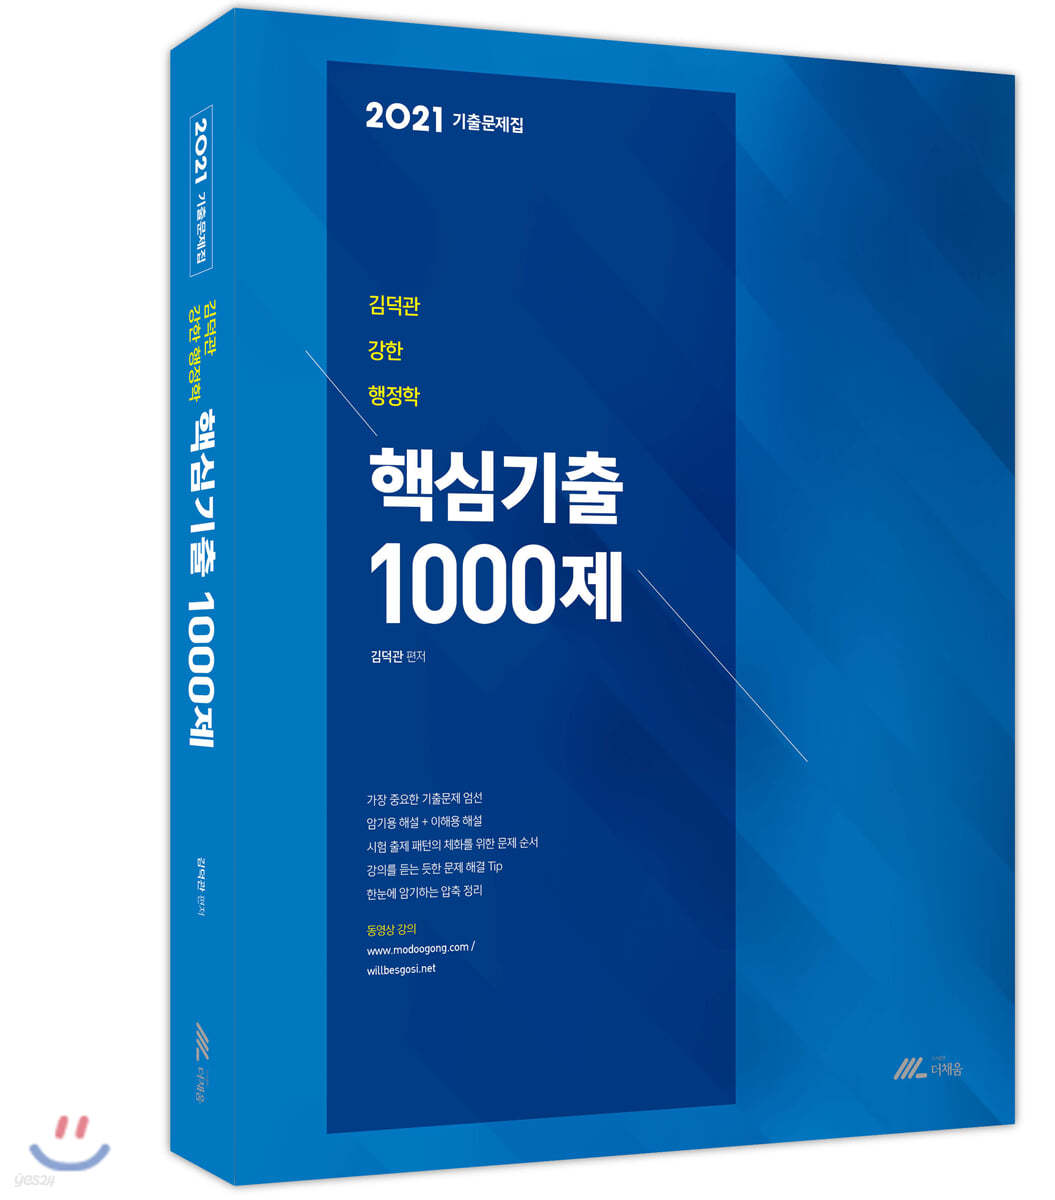 2021 김덕관 강한 행정학 핵심기출 1000제 